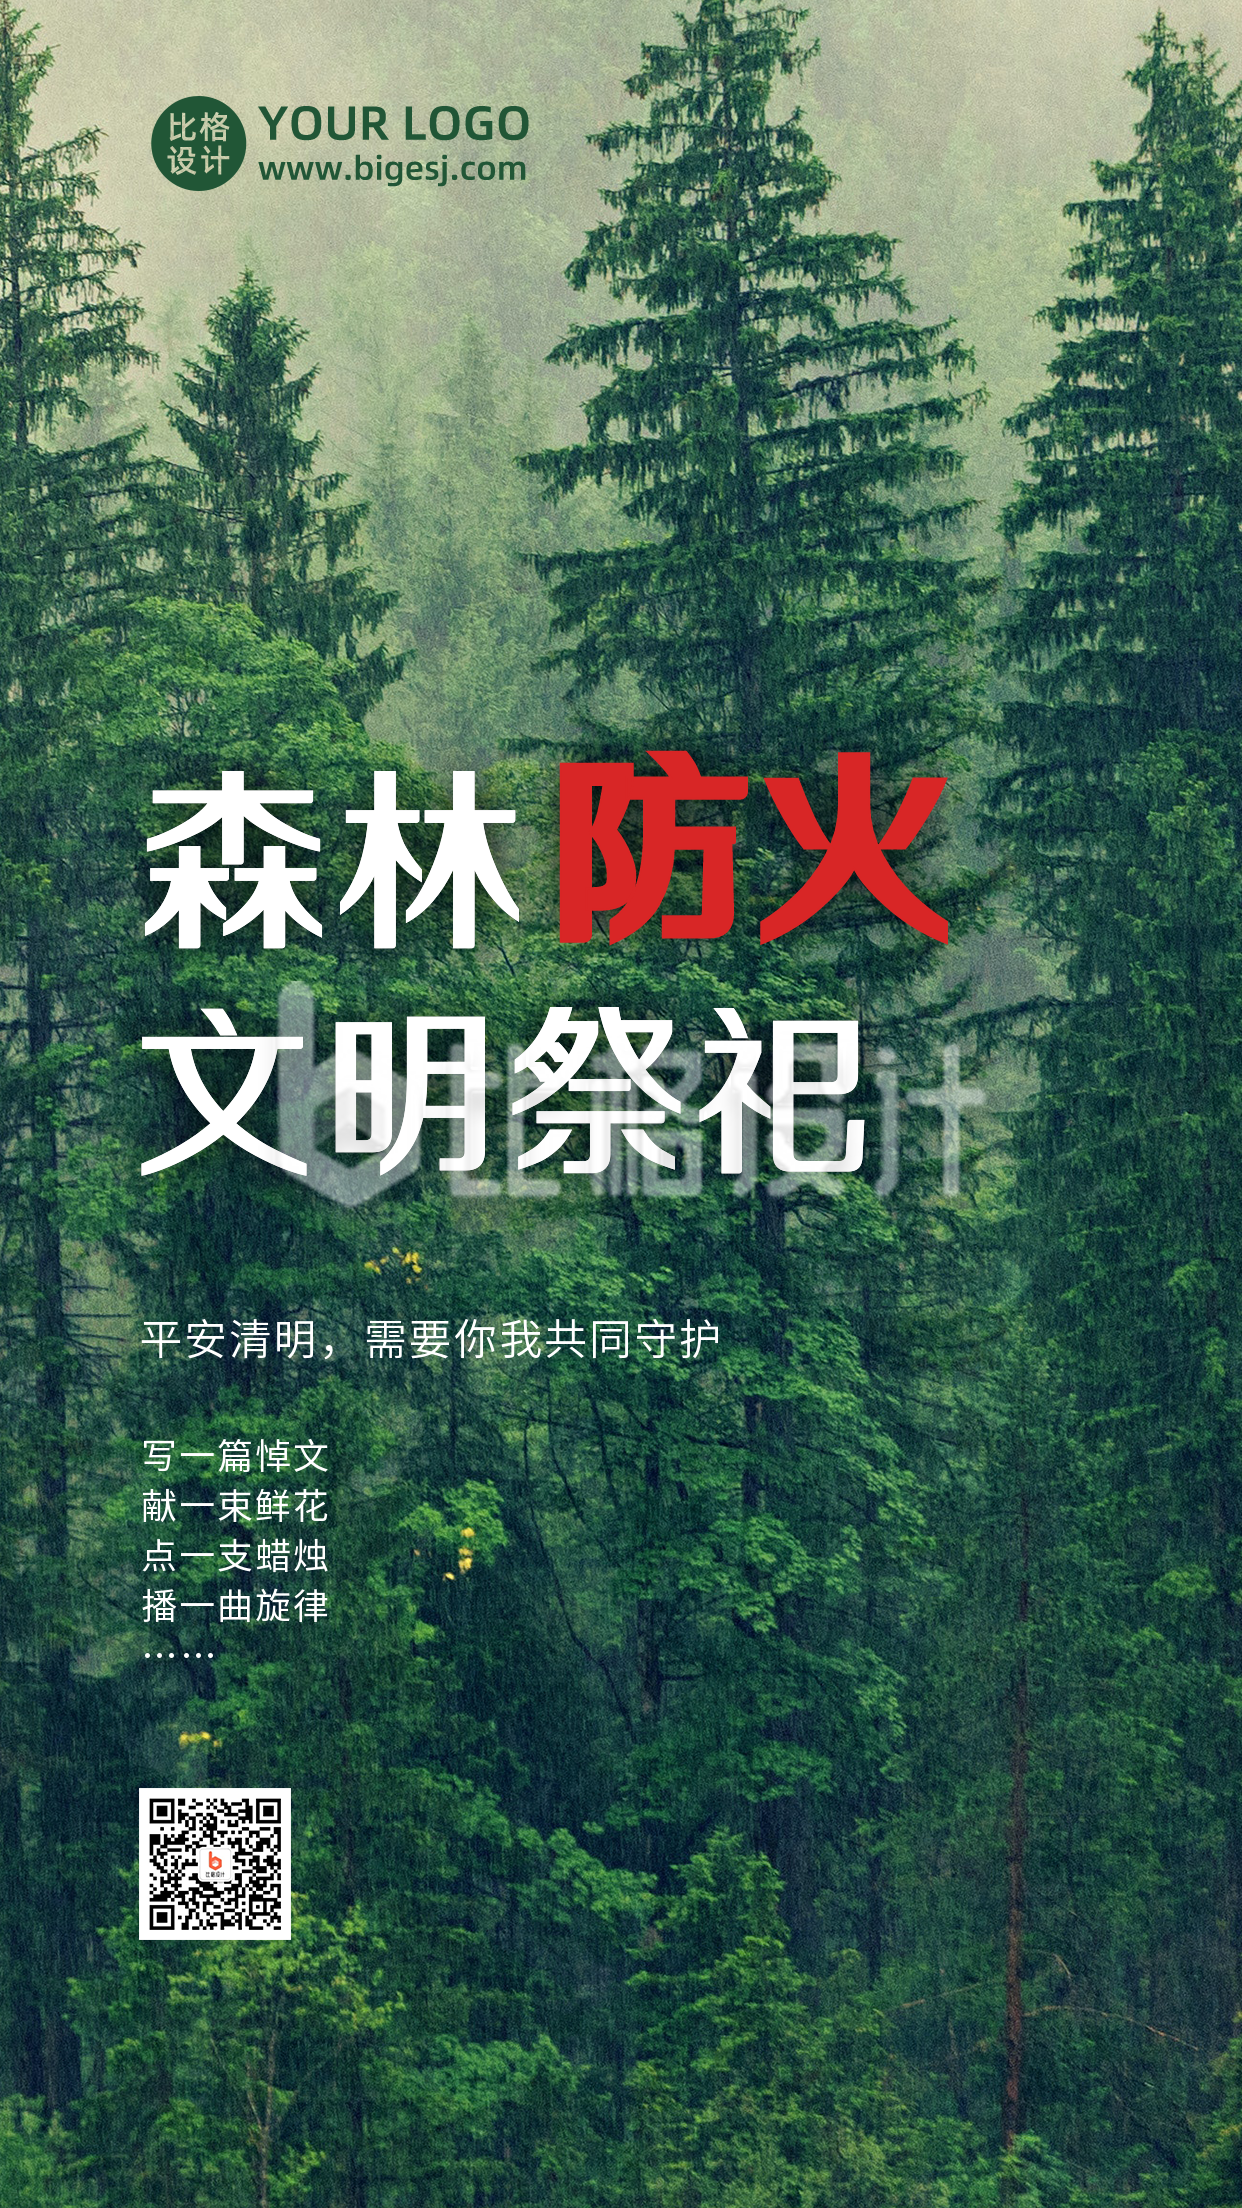 清明节文明祭扫森林防火实景手机海报